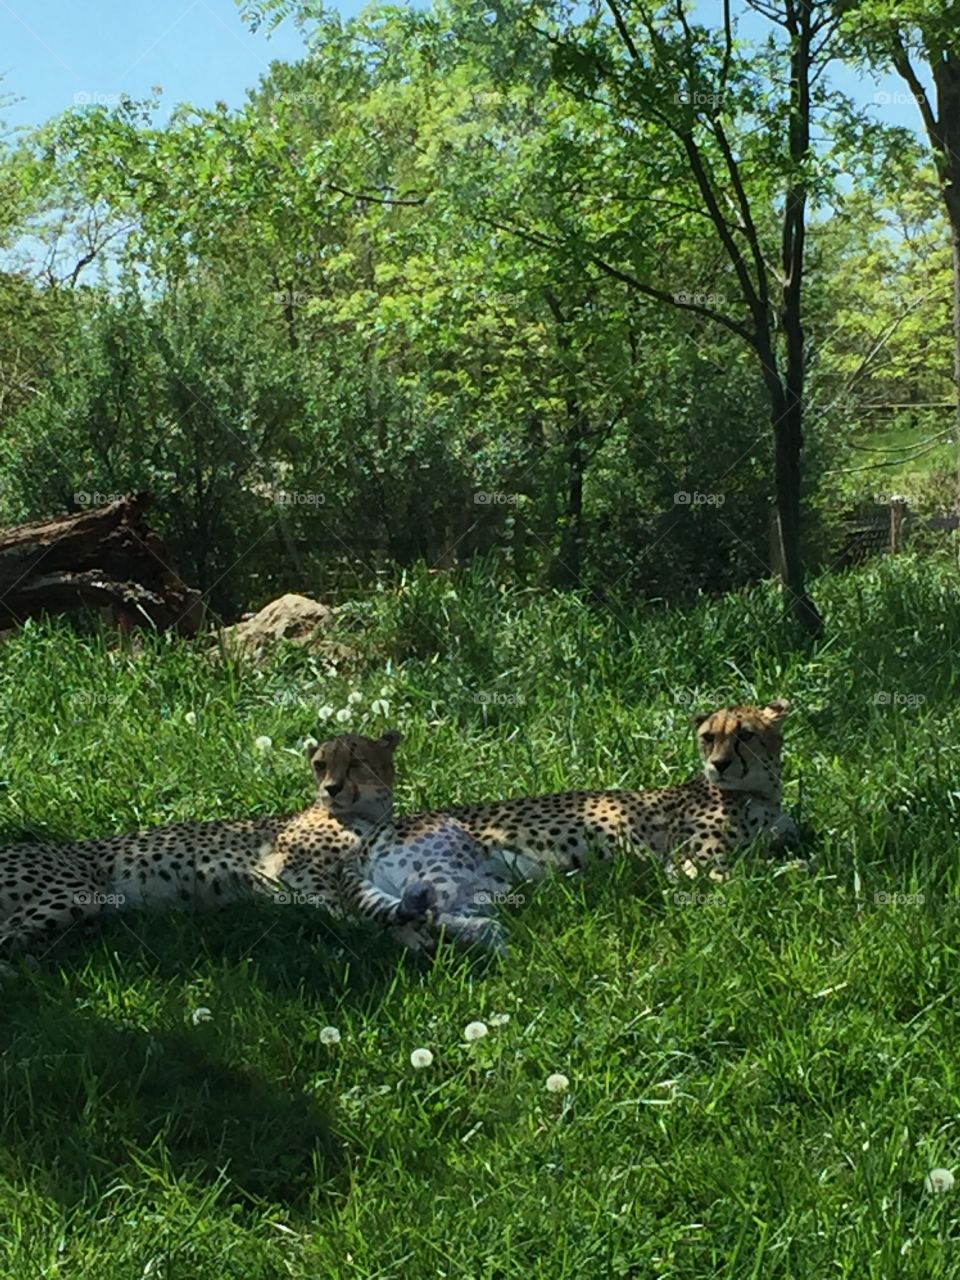 Leopards!